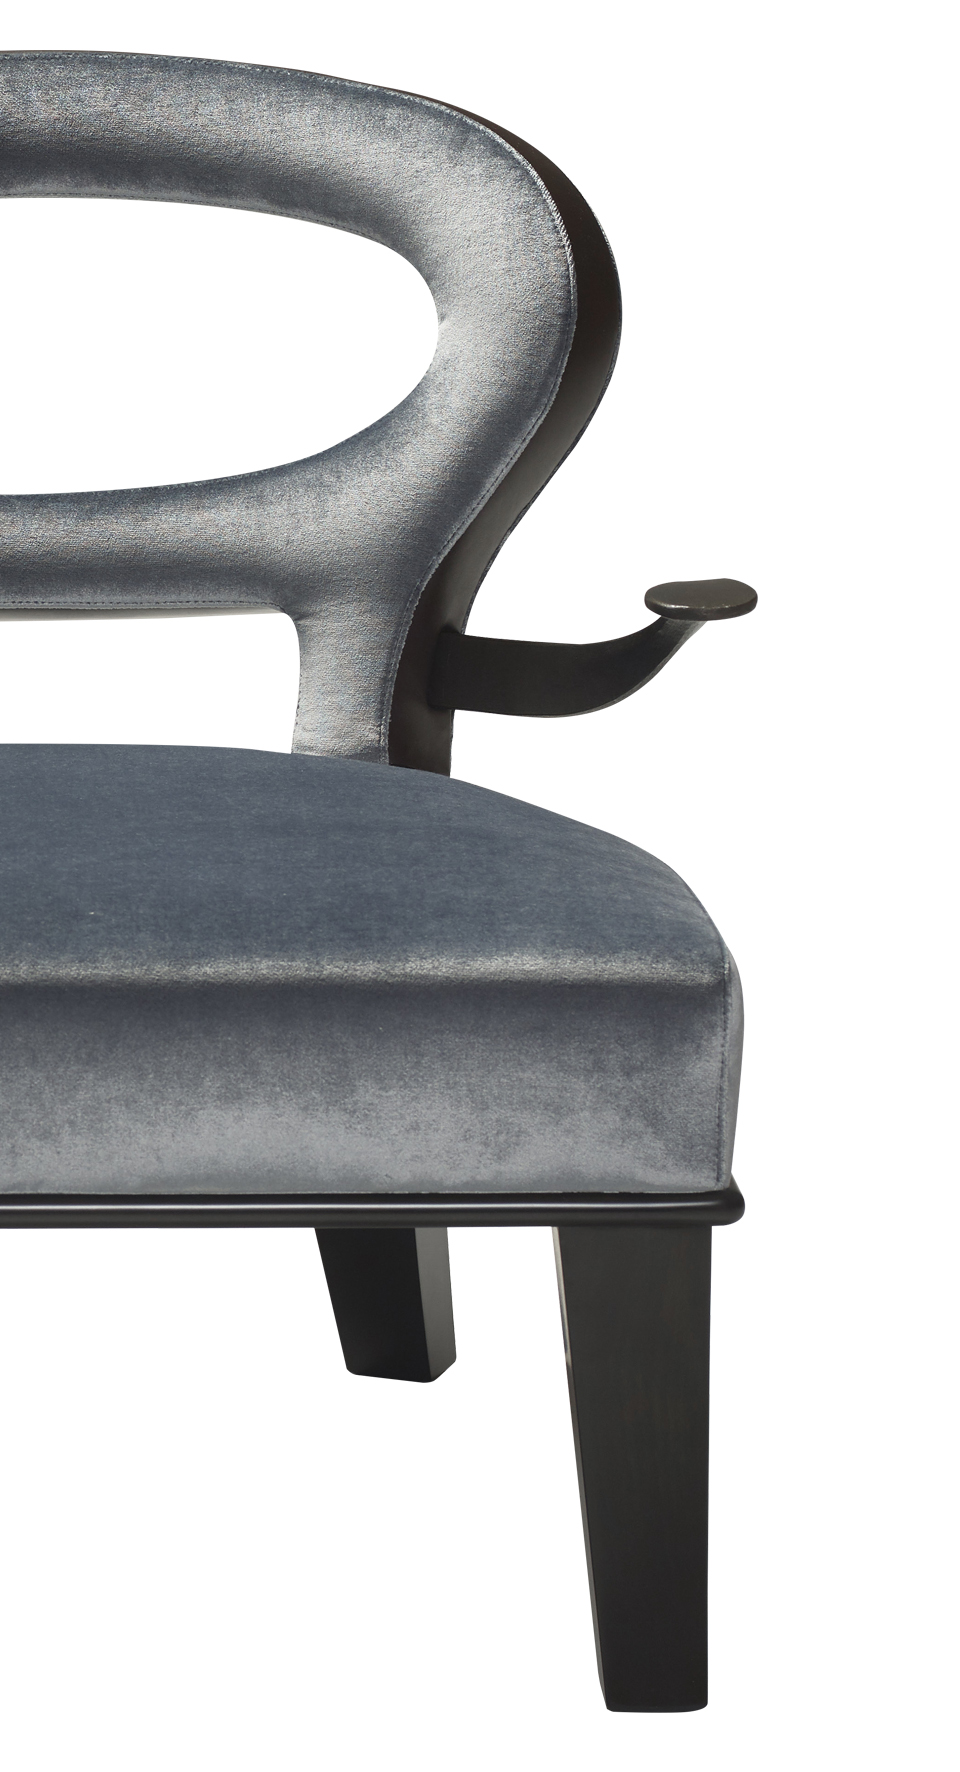 Détail de Roka Large, large fauteuil en bois avec un revêtement en tissu et cuir et des accoudoirs en bronze. Ce meuble figure dans le catalogue Promemoria | Promemoria